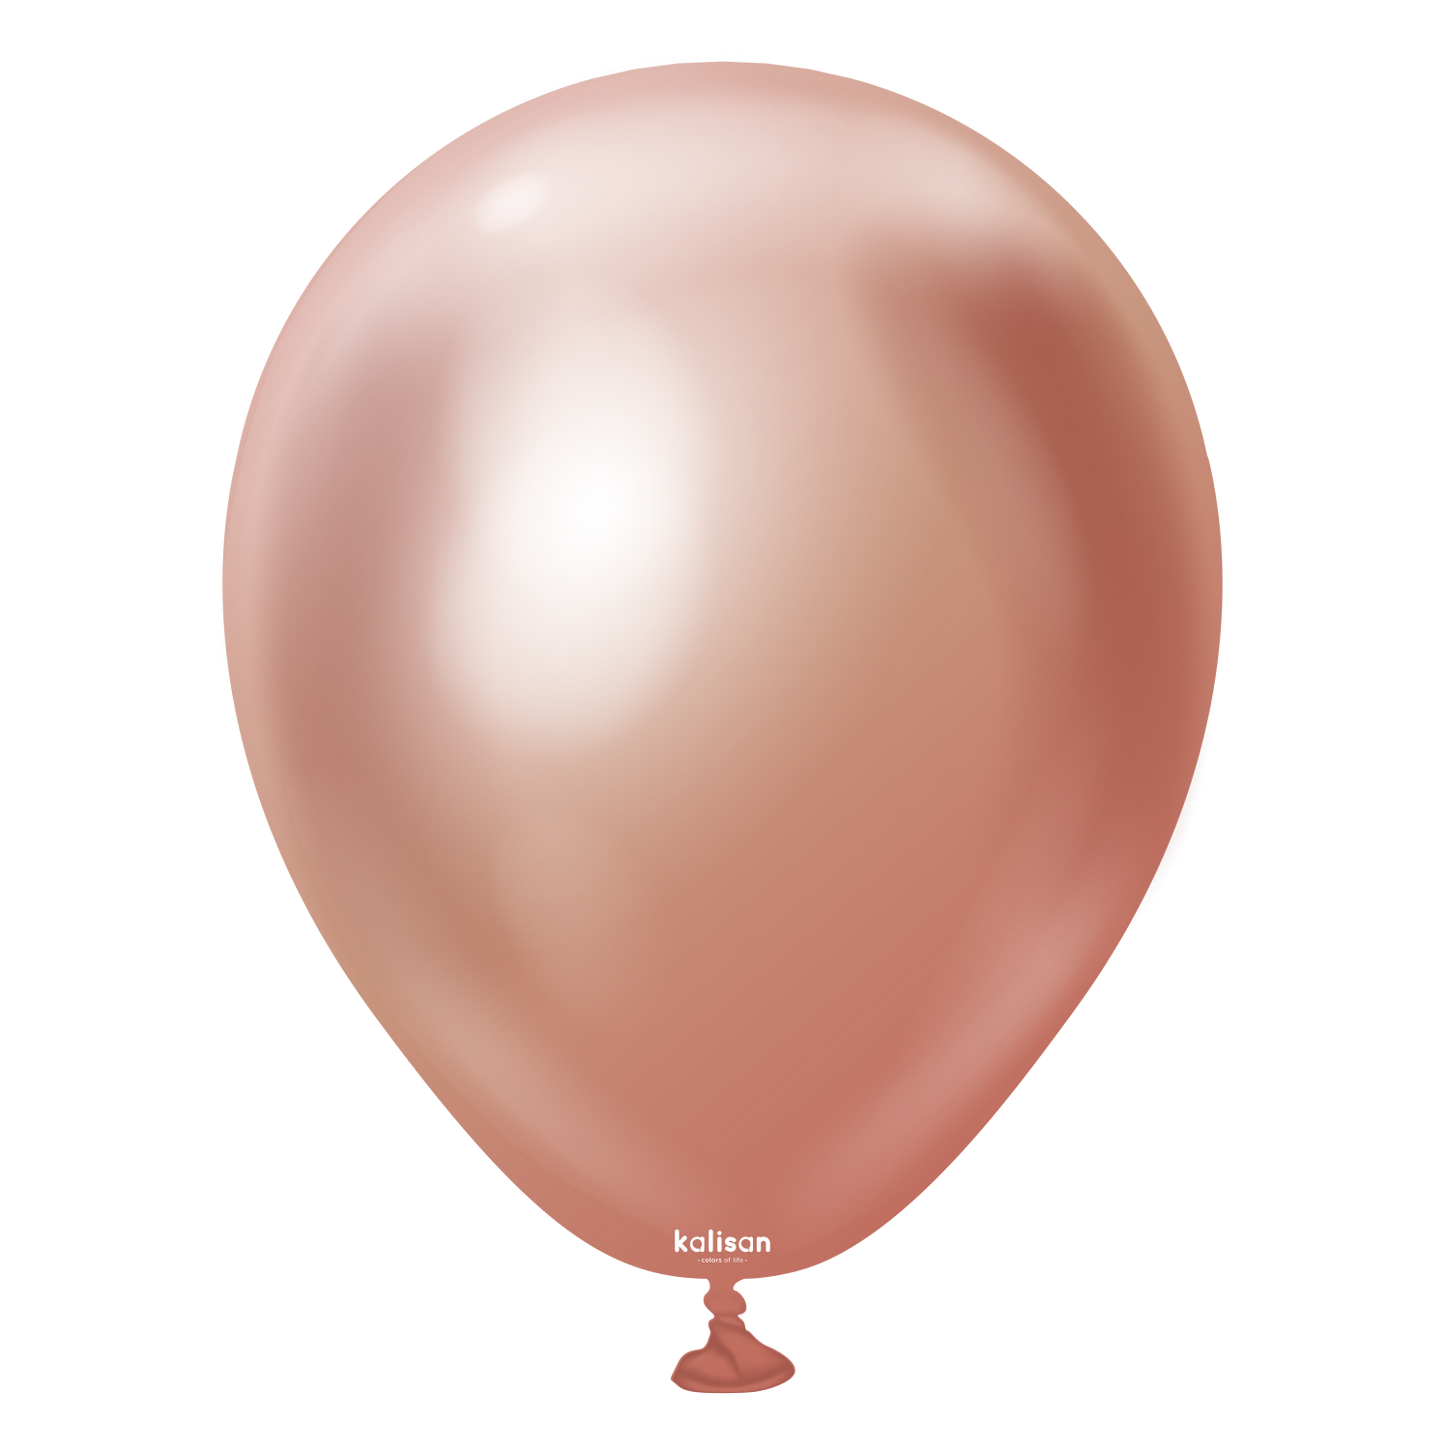 Rifco / BWS 18" Chrome Ballon